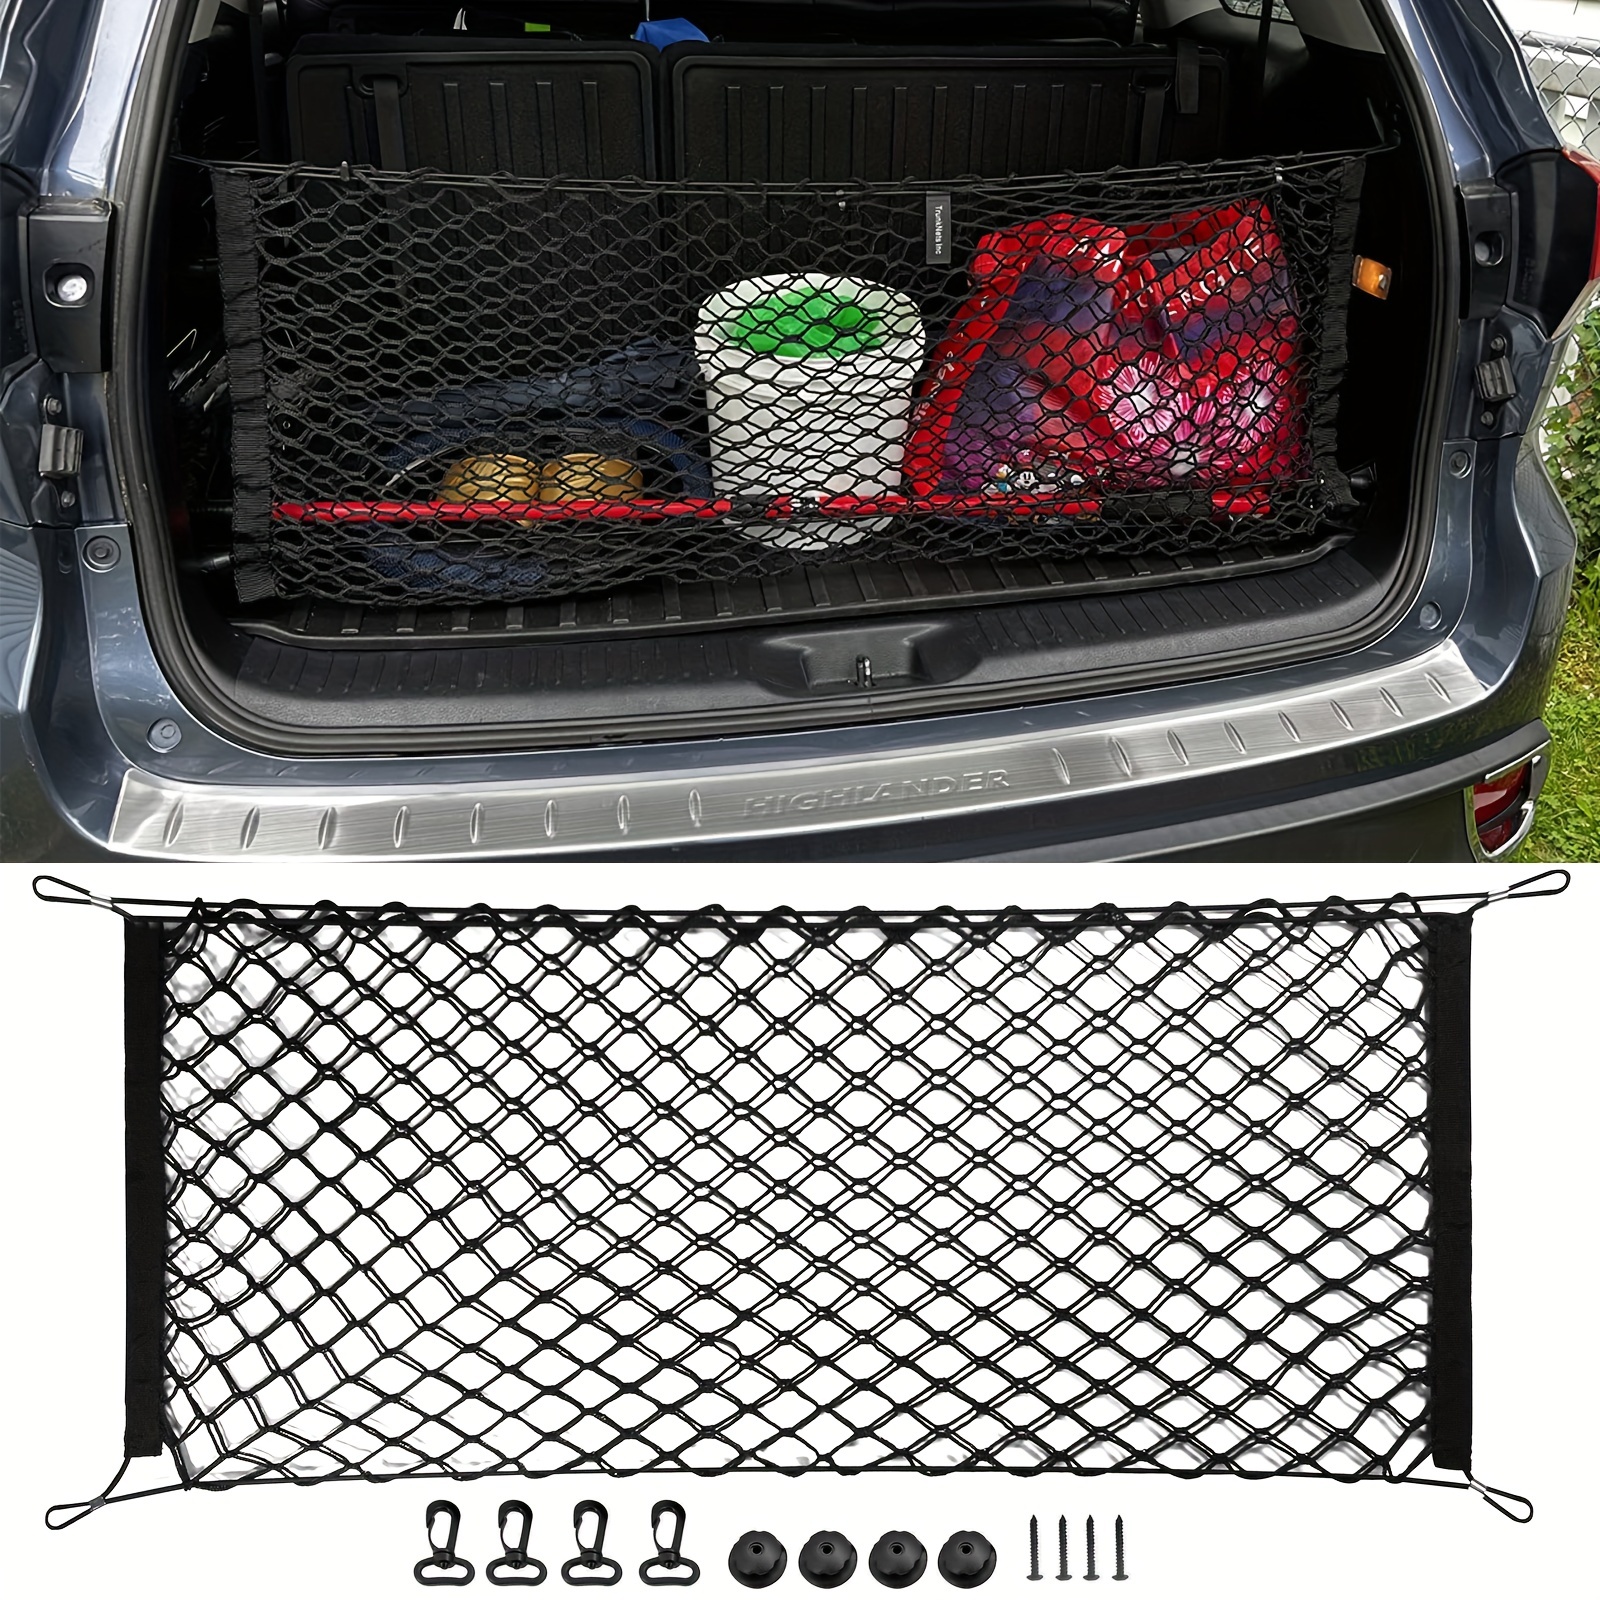  Red de carga organizadora de cama para maletero, red de  almacenamiento de malla con 4 ganchos de metal, red de carga resistente de  43.3 x 11.8 pulgadas para SUV, automóvil, Toyota